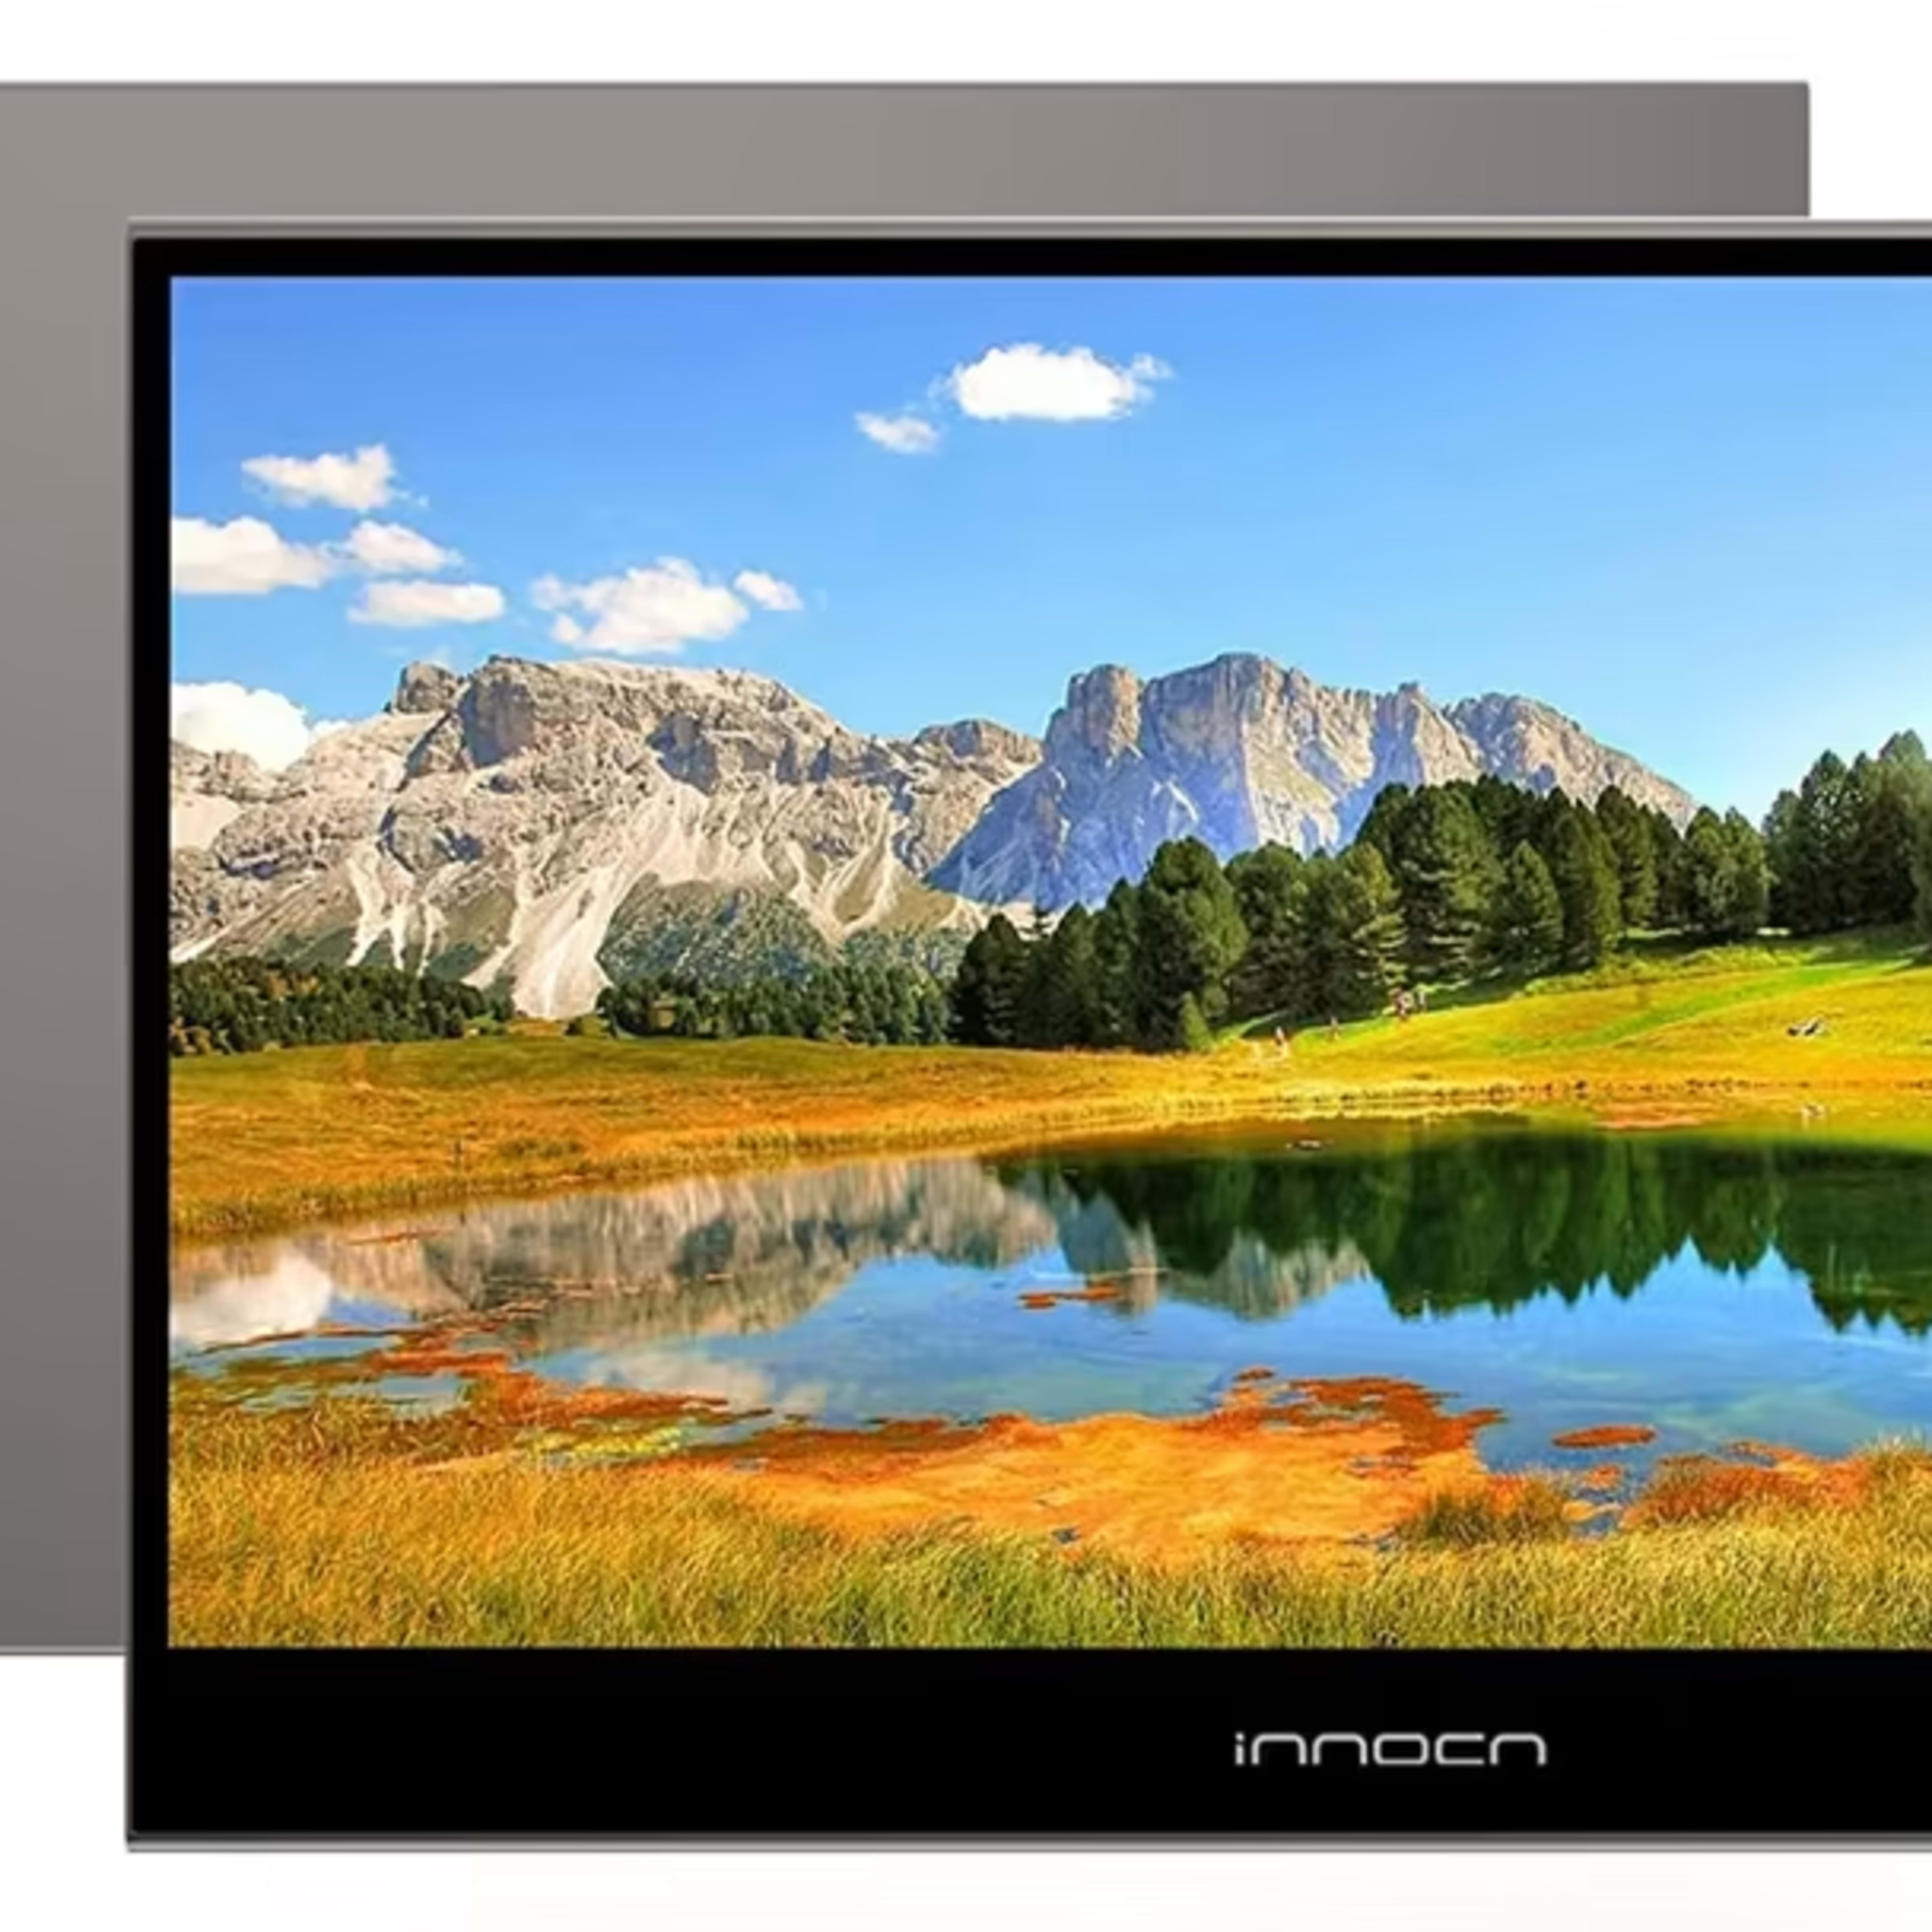 BNIB Innocn K1F15 15" 1080p/60Hz OLED portable monitor